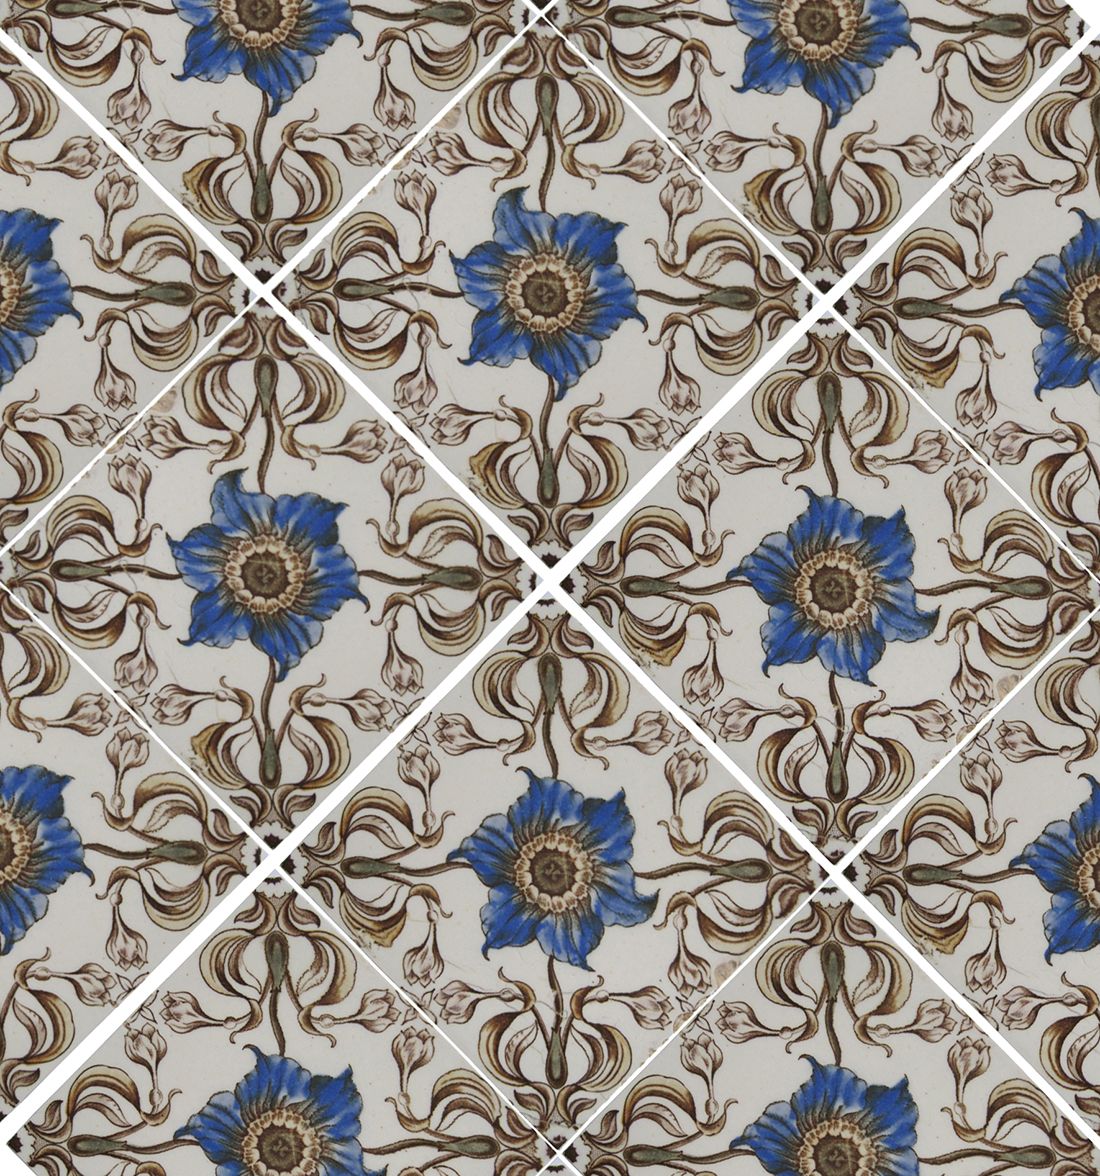 BLUE FLOWER HEAD 4 tiles on diagonal 